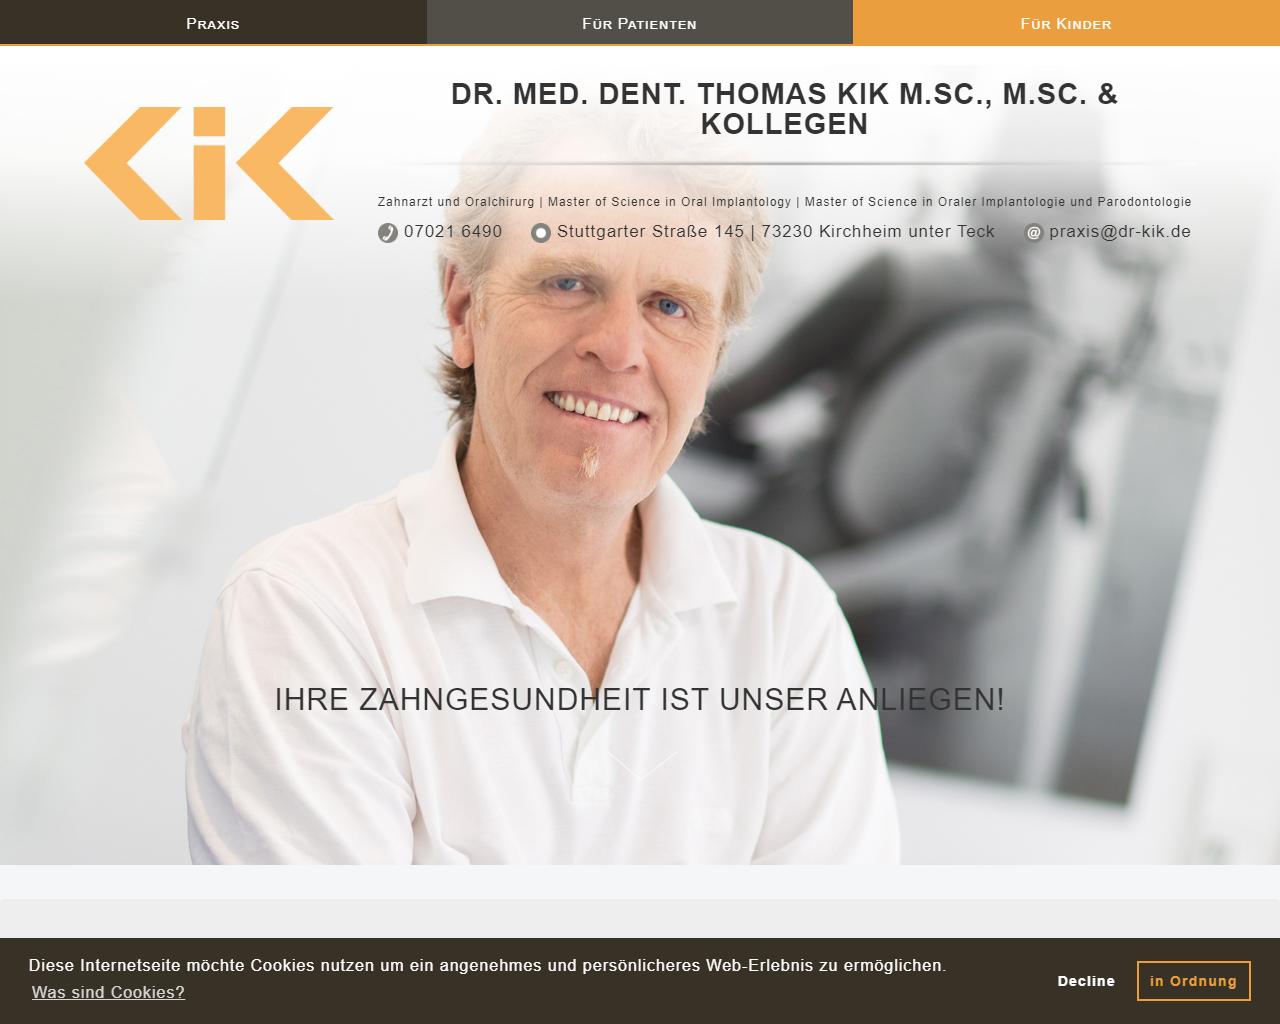 Herr Dr. Thomas Kik